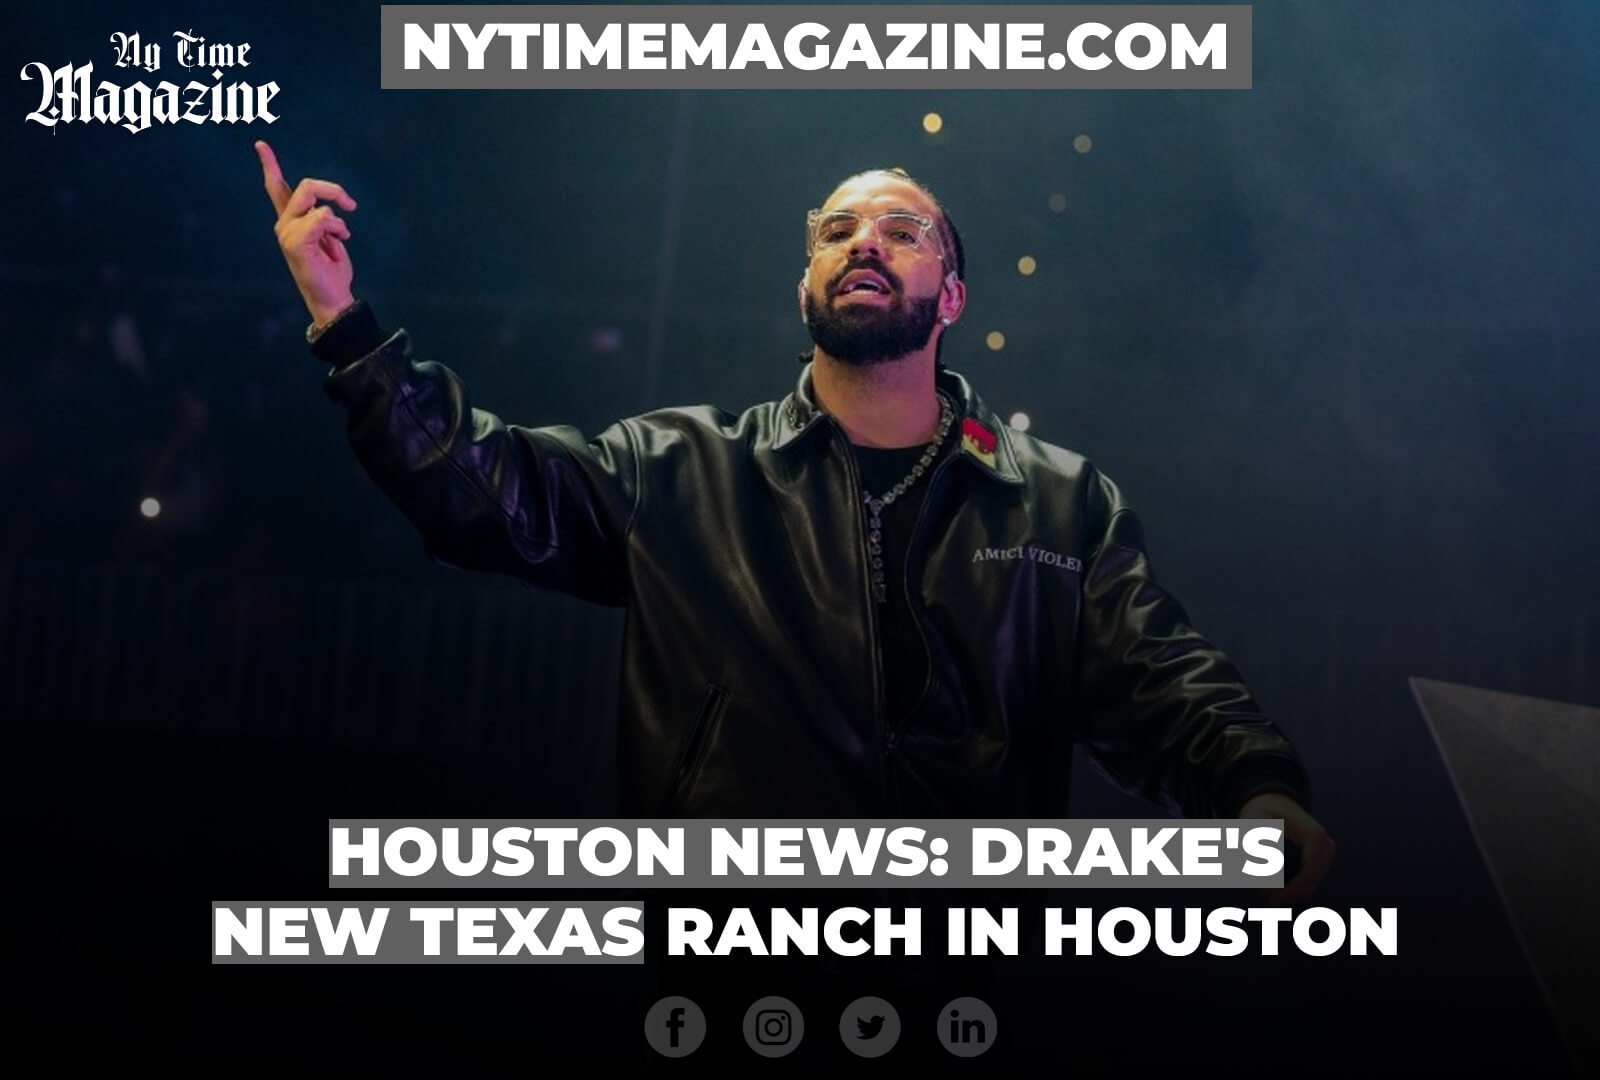 Houston News: Drake's New Texas Ranch in Houston